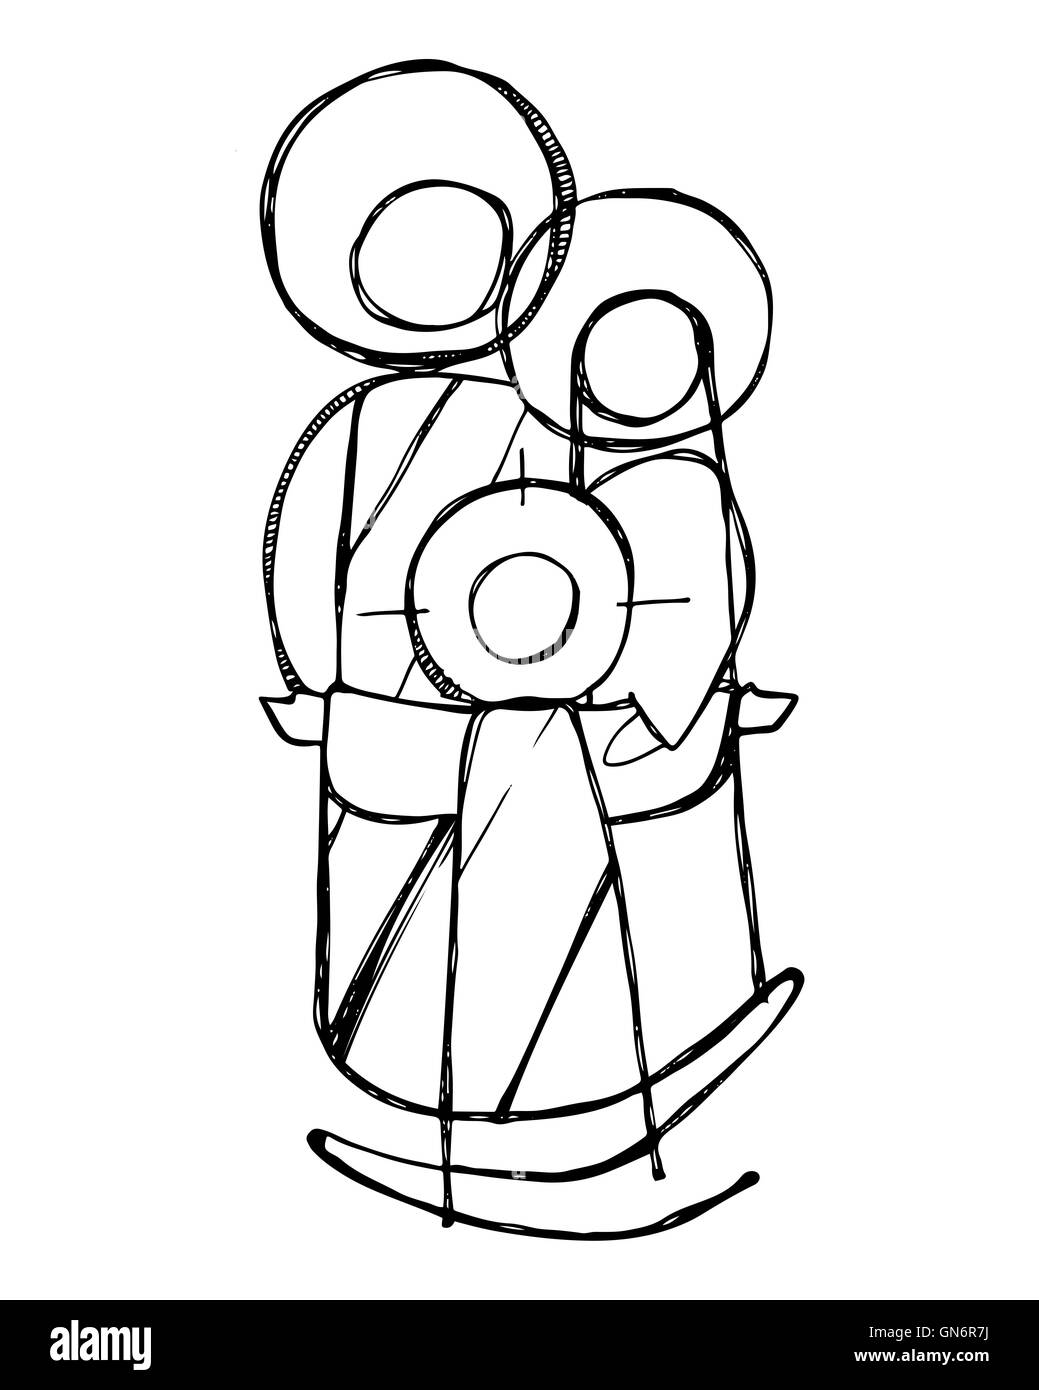 Handgezeichnete Illustrationen oder Zeichnung von Jesus Heilige Familie in einem minimalistischen Stil Stockfoto